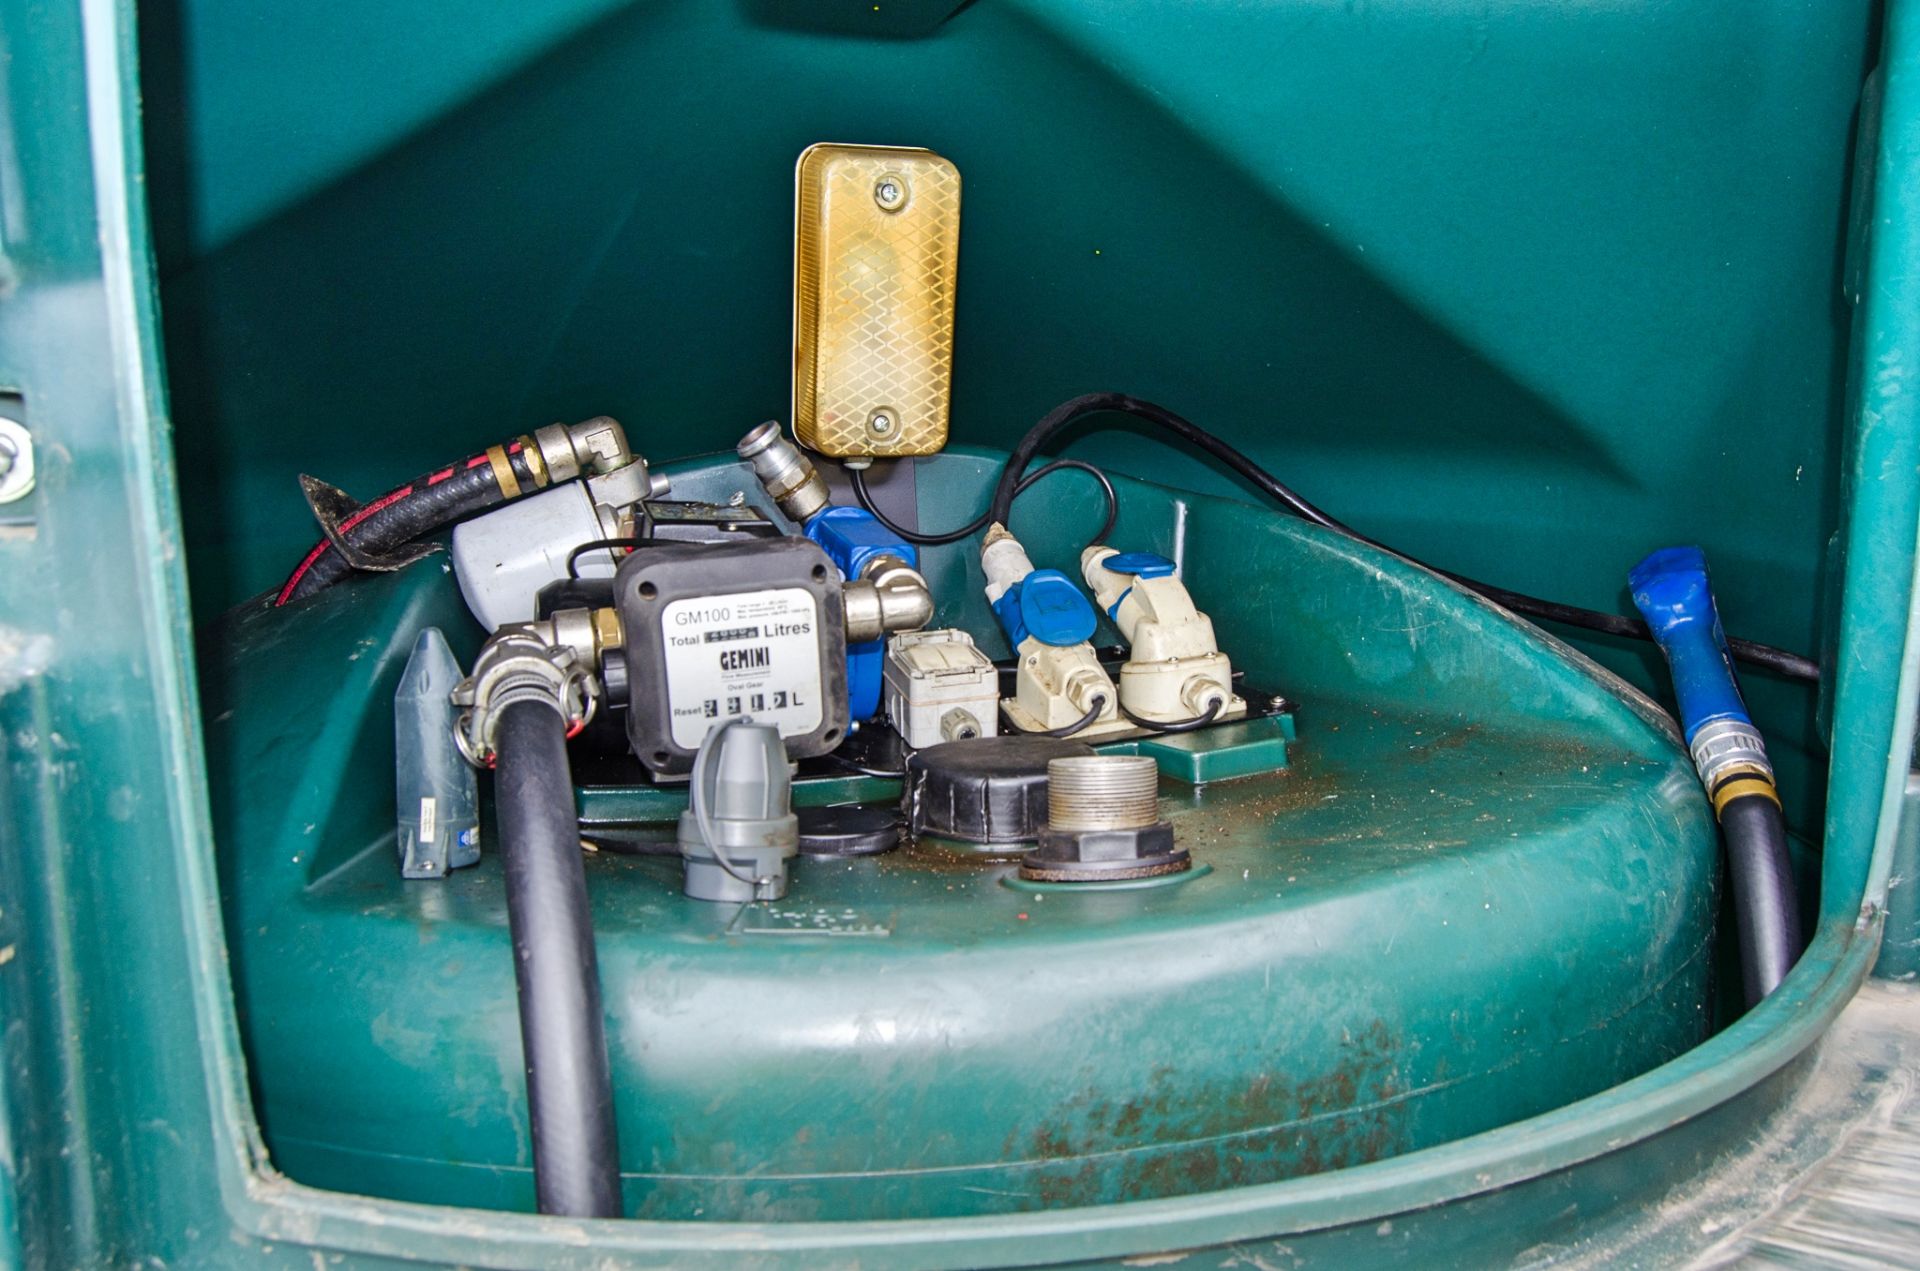 Harlequin 1400FS 1400 litre bunded fuel bowser c/w 240v pump, delivery meter, hose & nozzle - Image 3 of 3